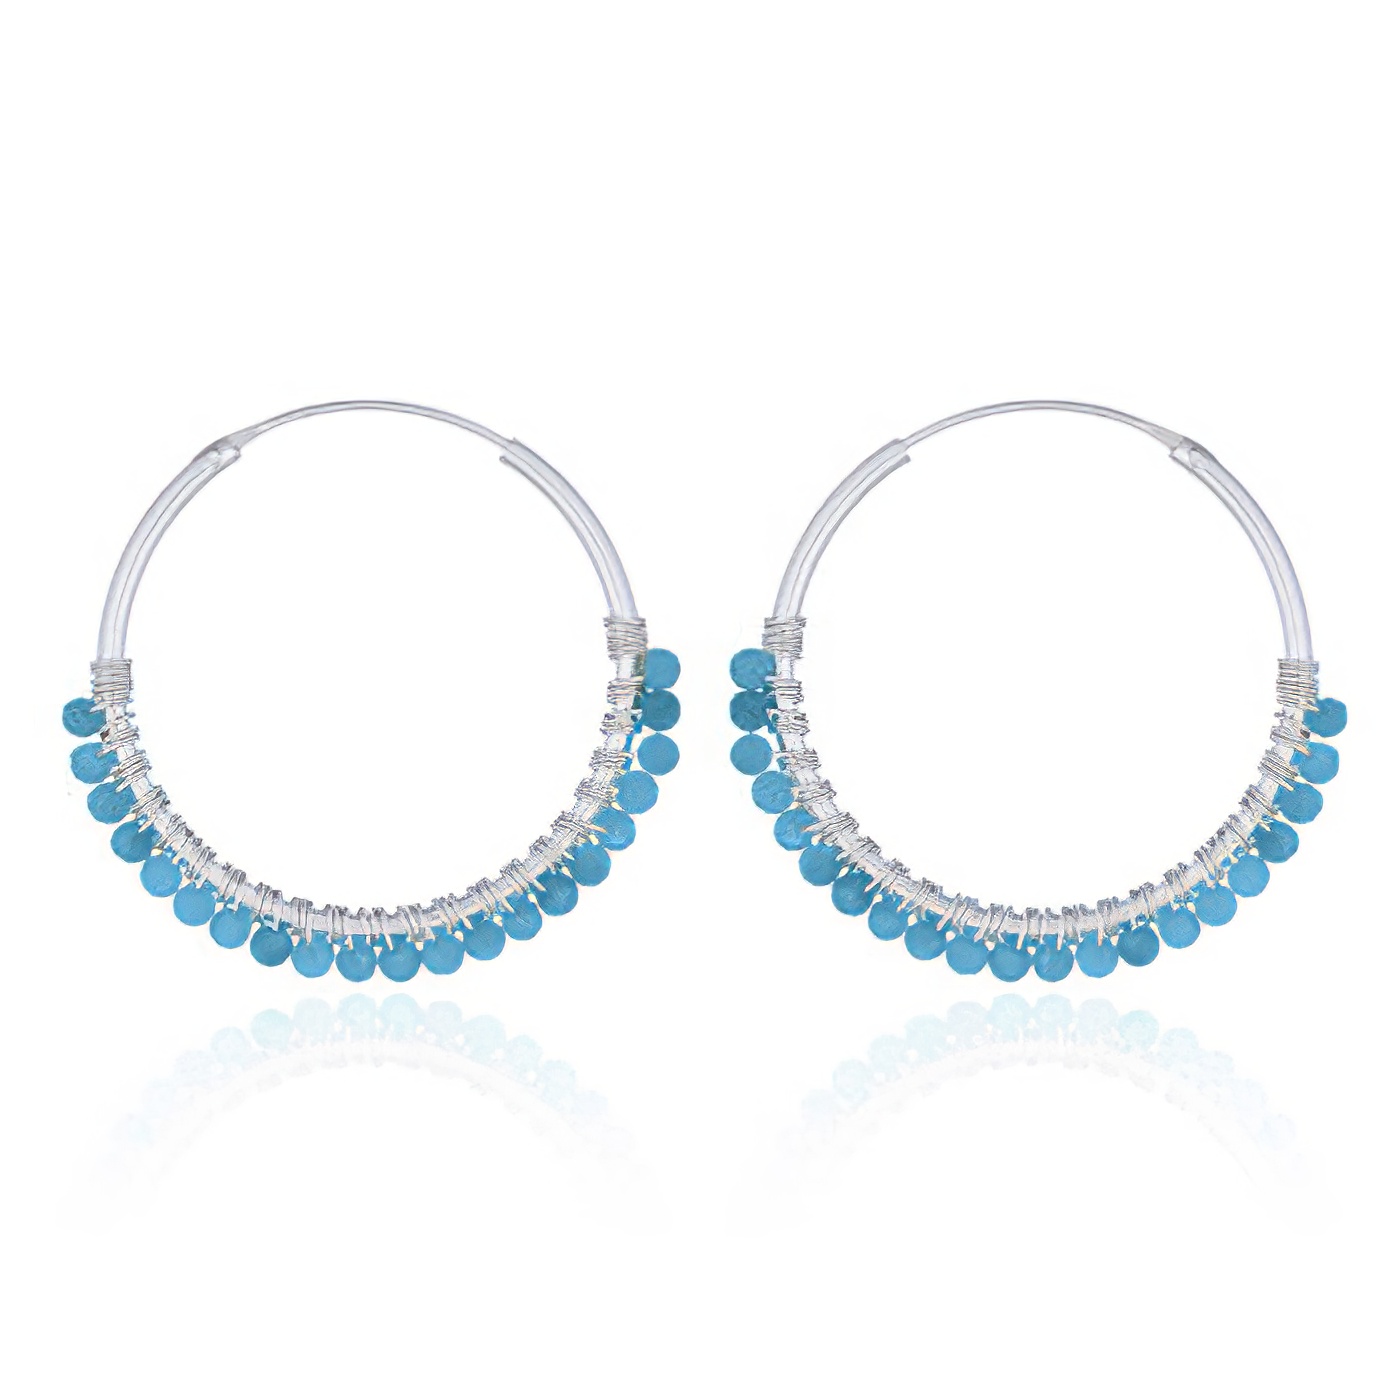 Faceted Blue Apatite Sterling Silver Hoop Earrings by BeYindi 